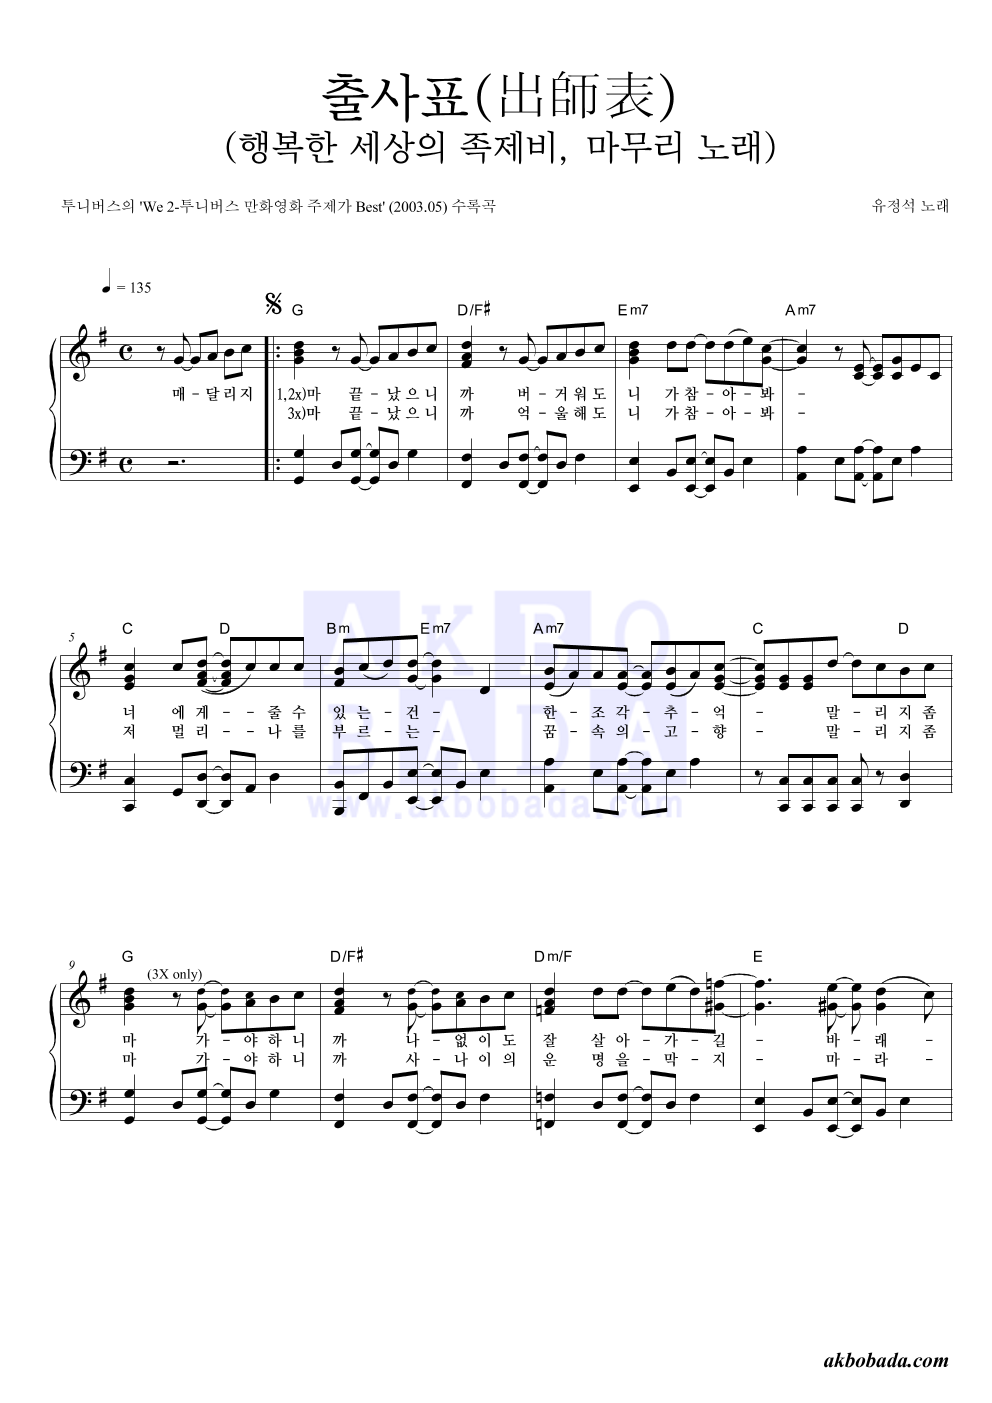 유정석 - 출사표(出師表)(행복한 세상의 족제비, 마무리 노래) 피아노 2단 악보 